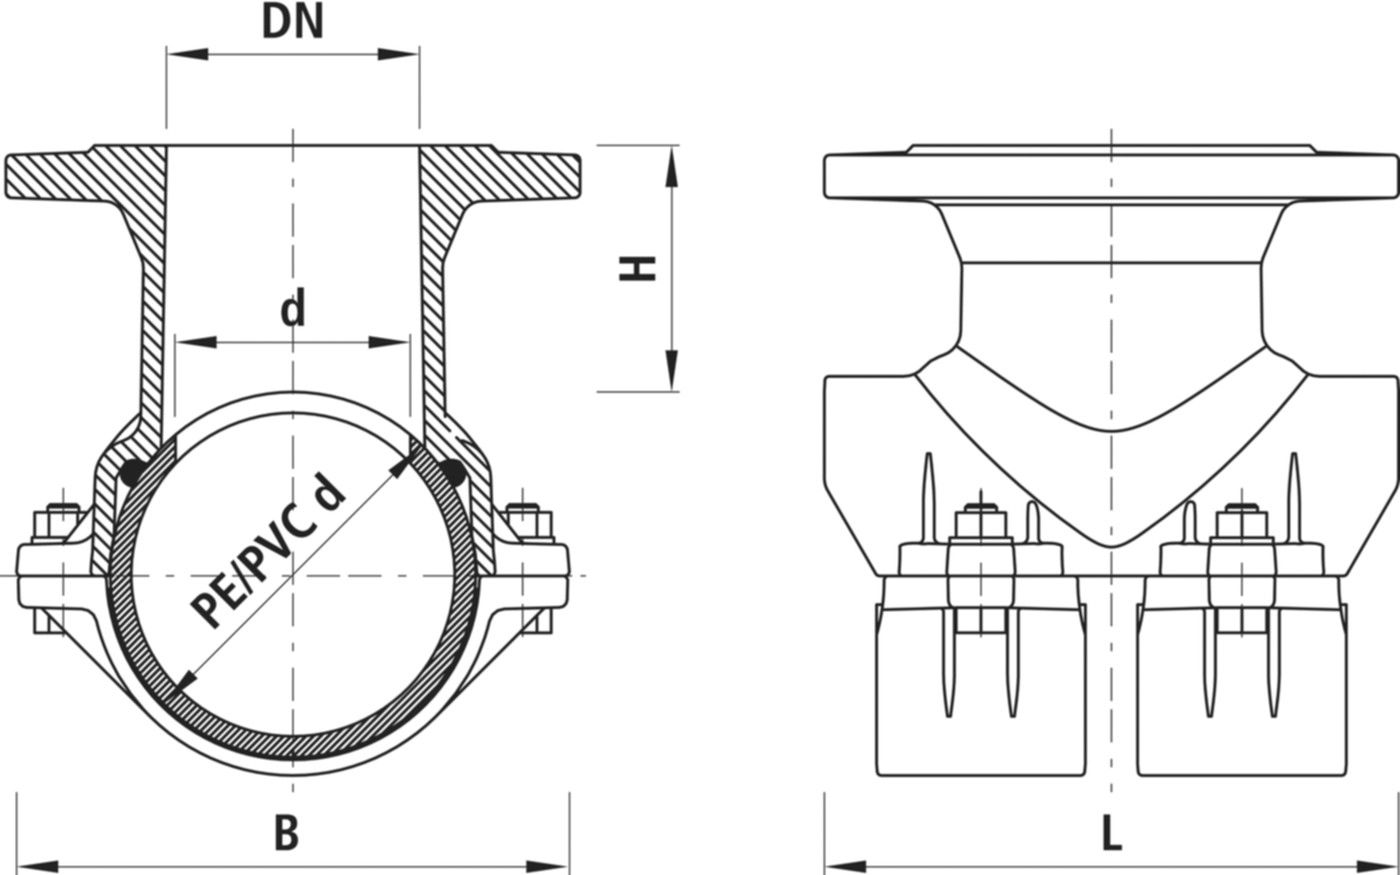 Haku-Anbohrschelle mit Flansch 5230 d 180mm / DN 100 - Hawle Hausanschluss- und Anbohrarmaturen